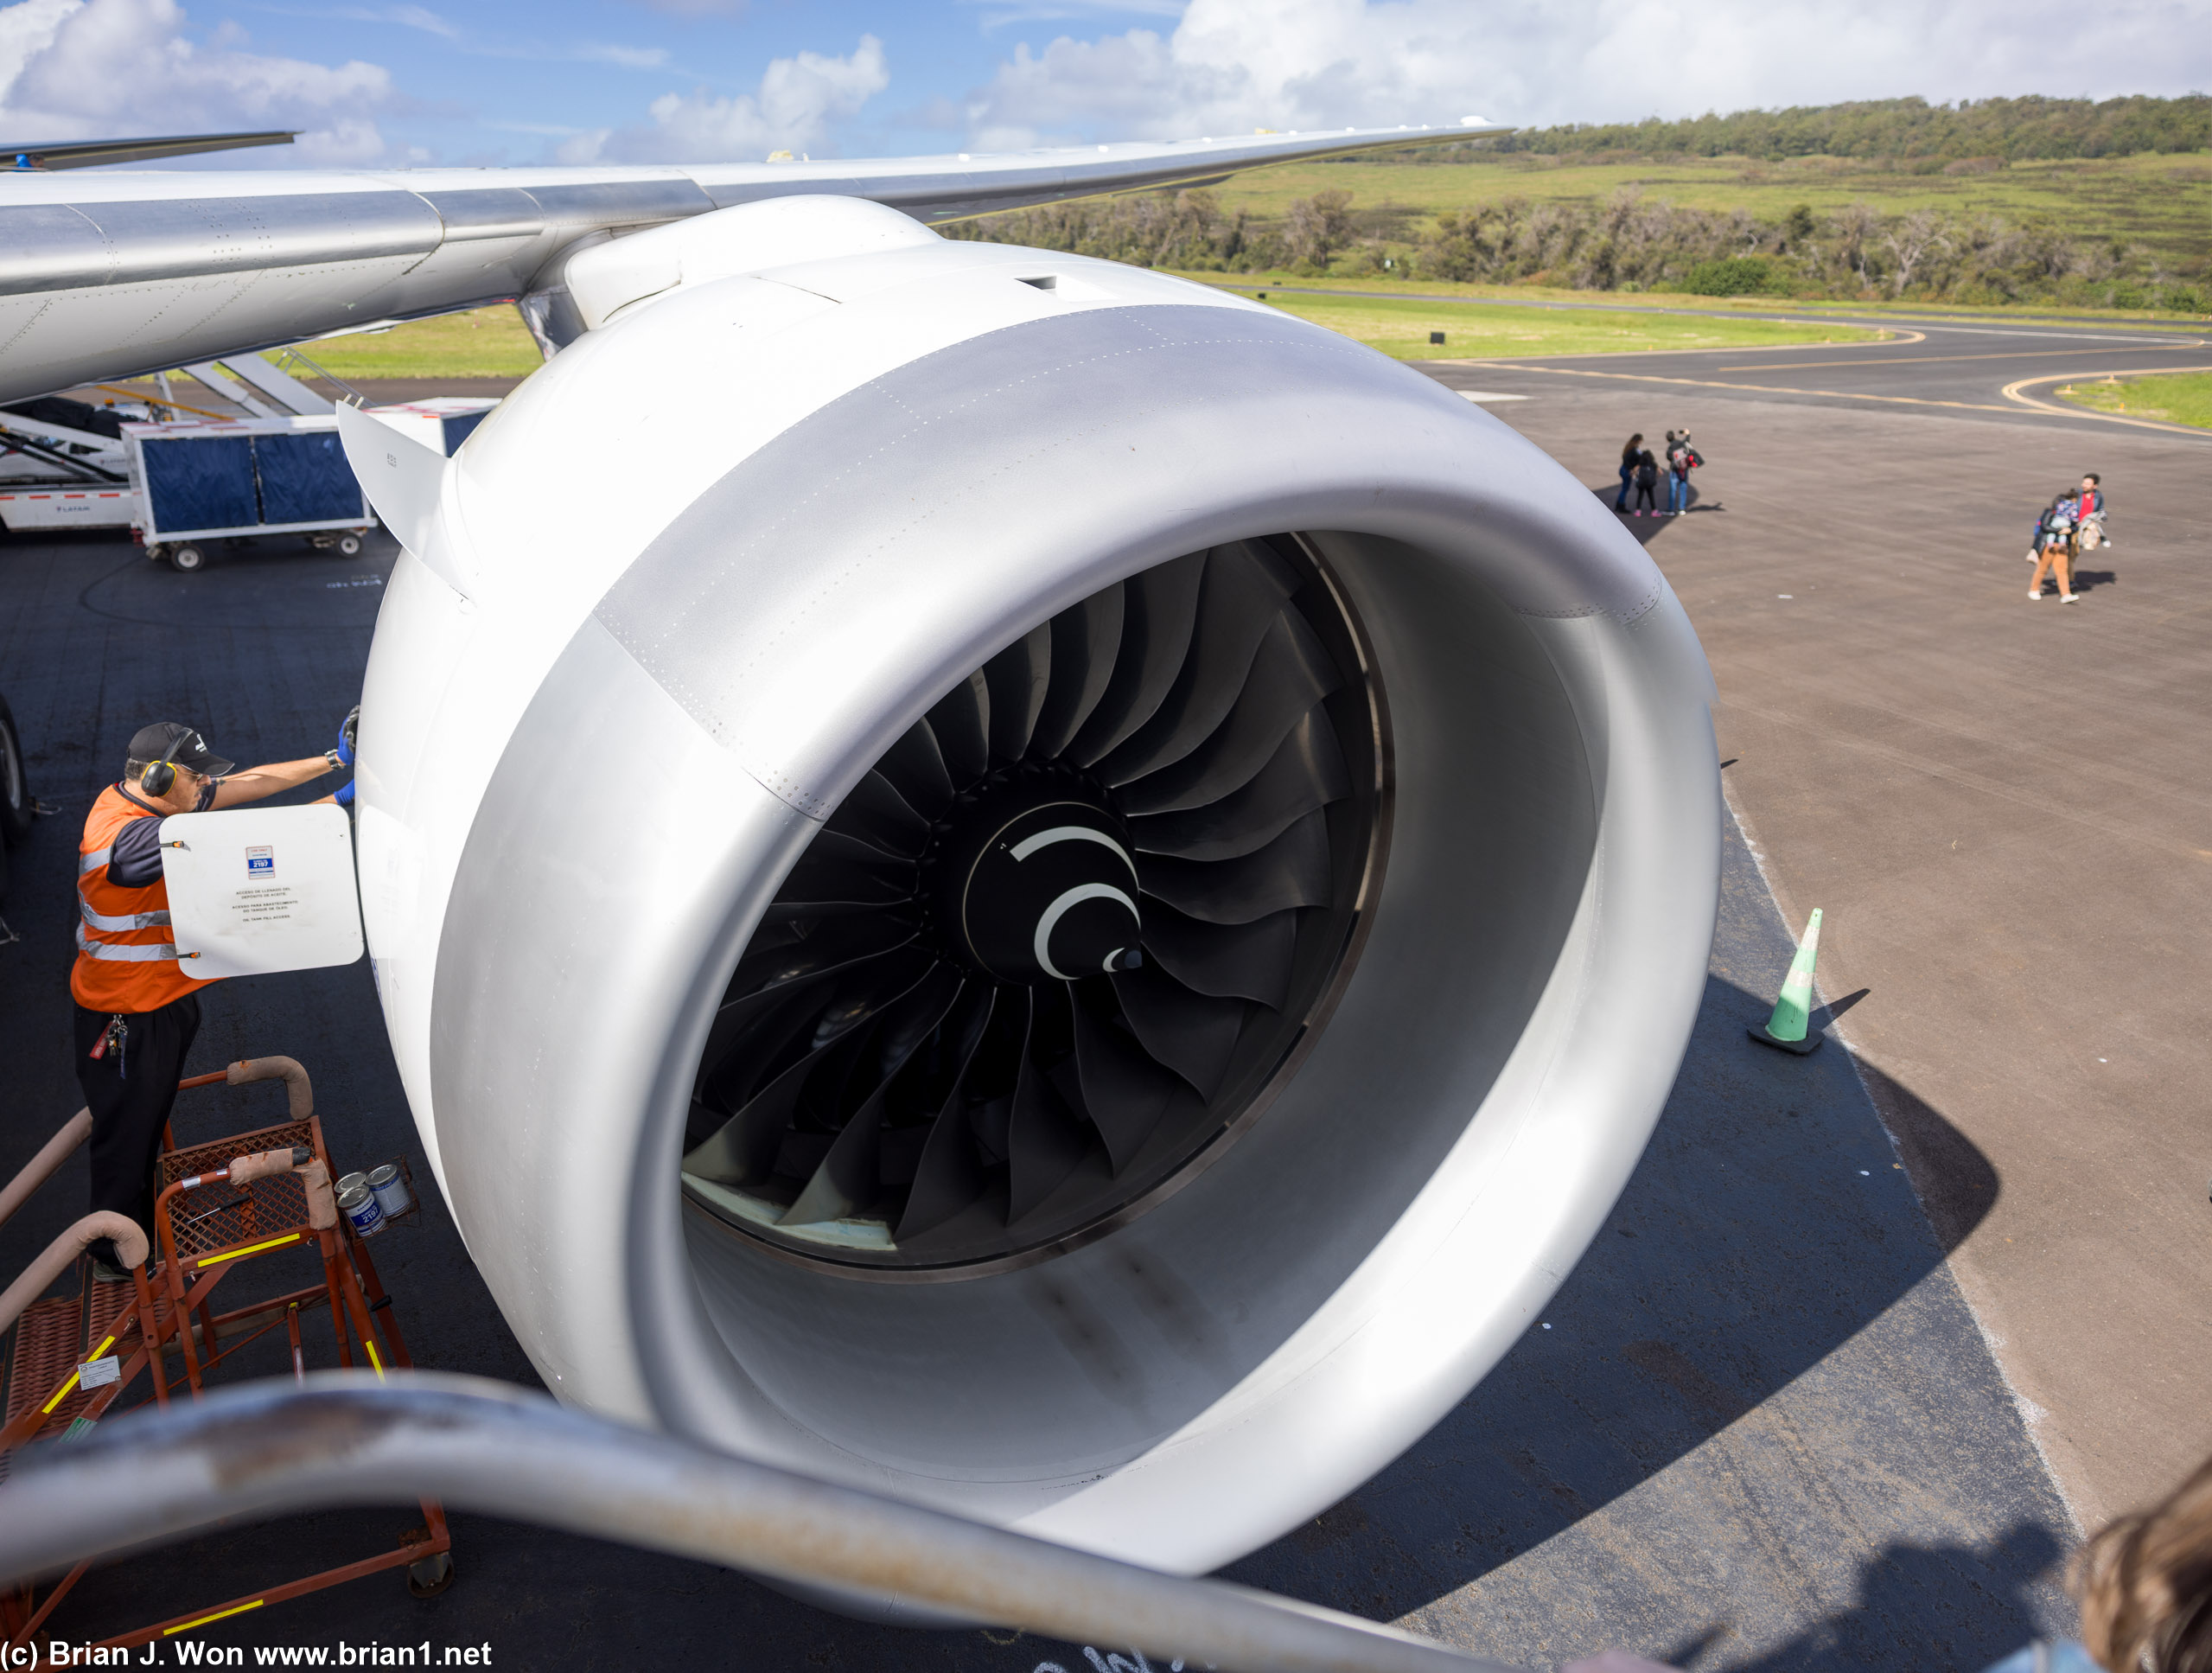 Rolls-Royce Trent 1000 turbofan, 112 inch fan.